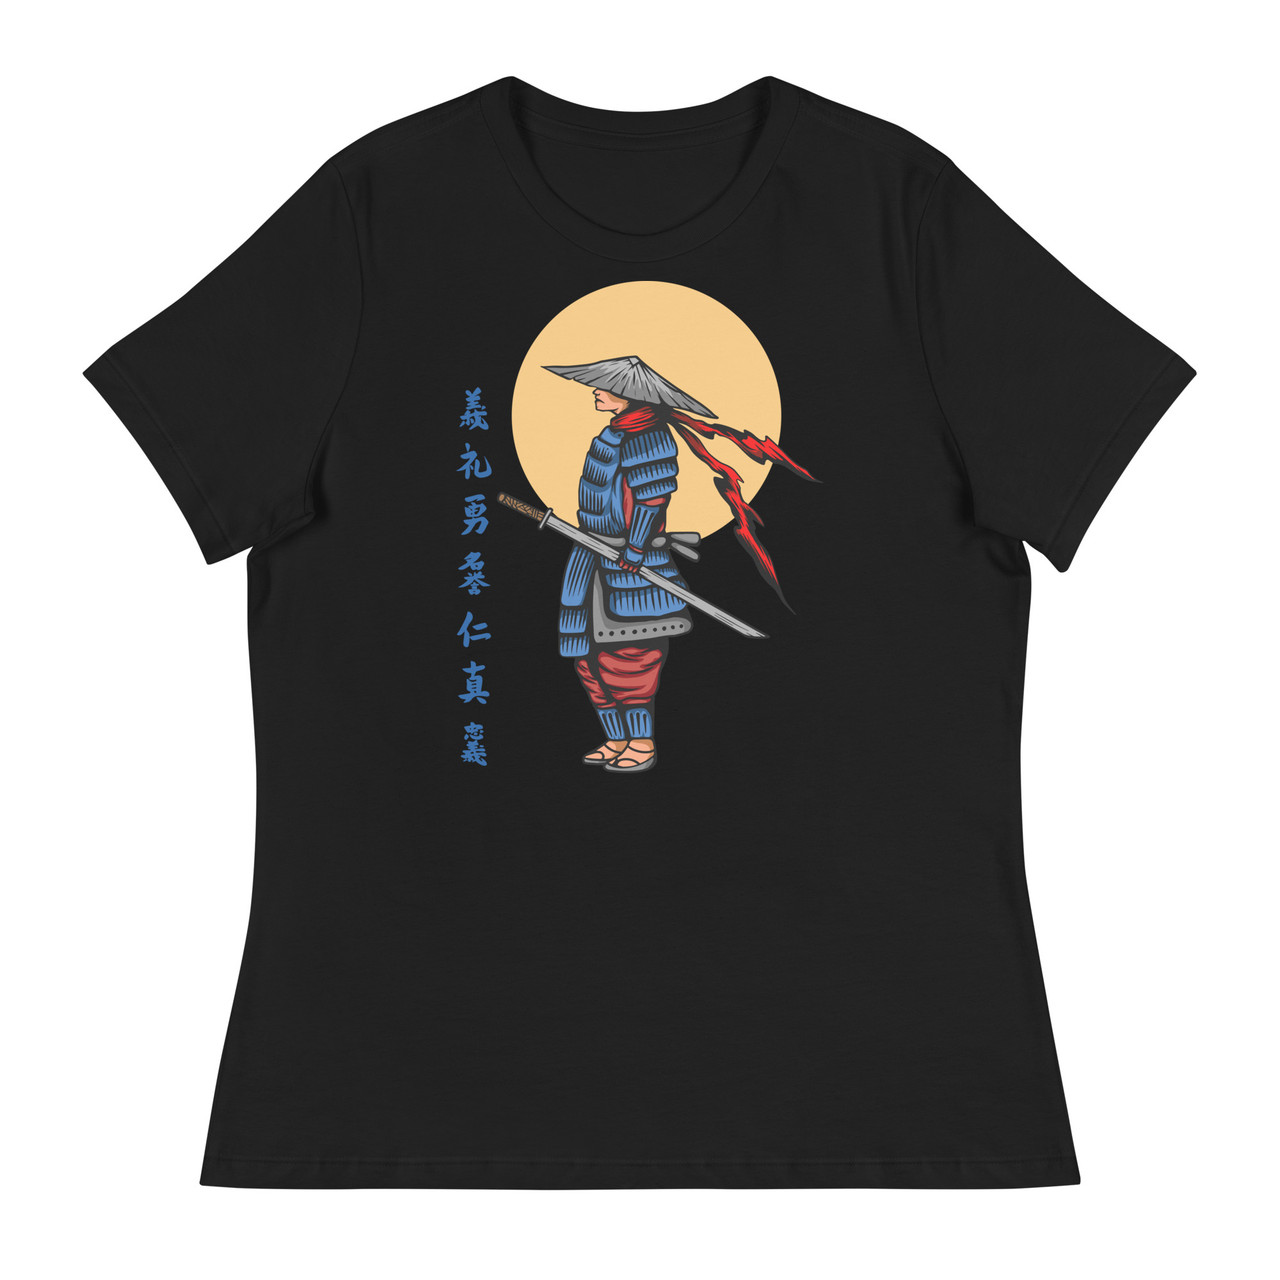 Samurai 23 Women's Relaxed T-Shirt - Bella + Canvas 6400 